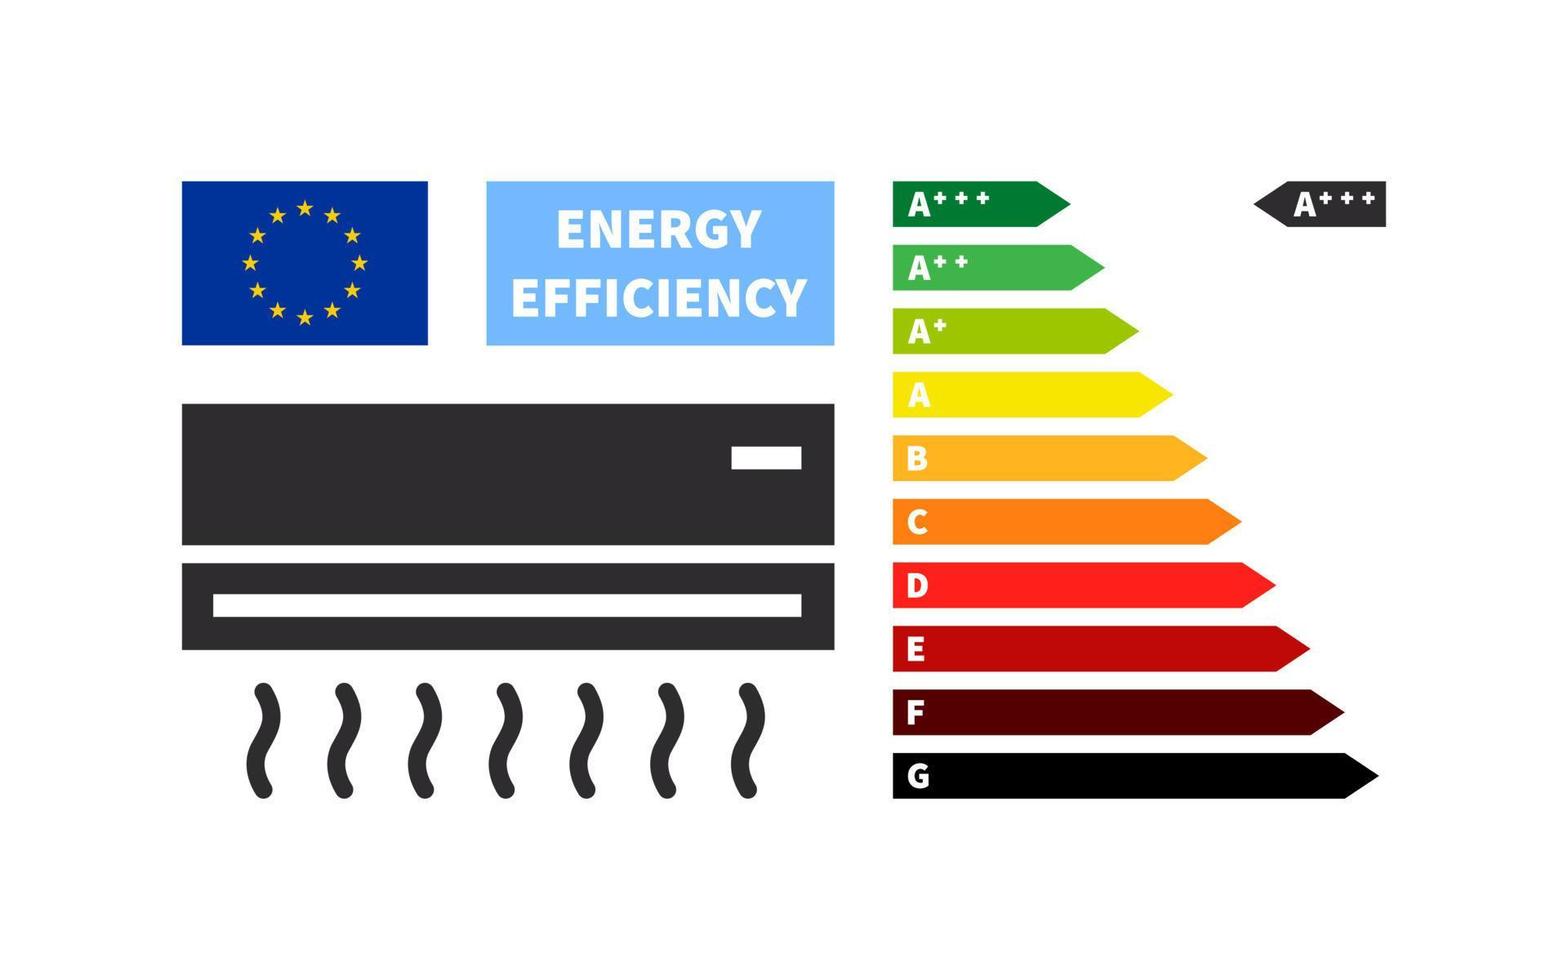 équipement ménager et tableau des classes énergétiques. tableau d'efficacité énergétique et d'évaluation. illustration vectorielle vecteur